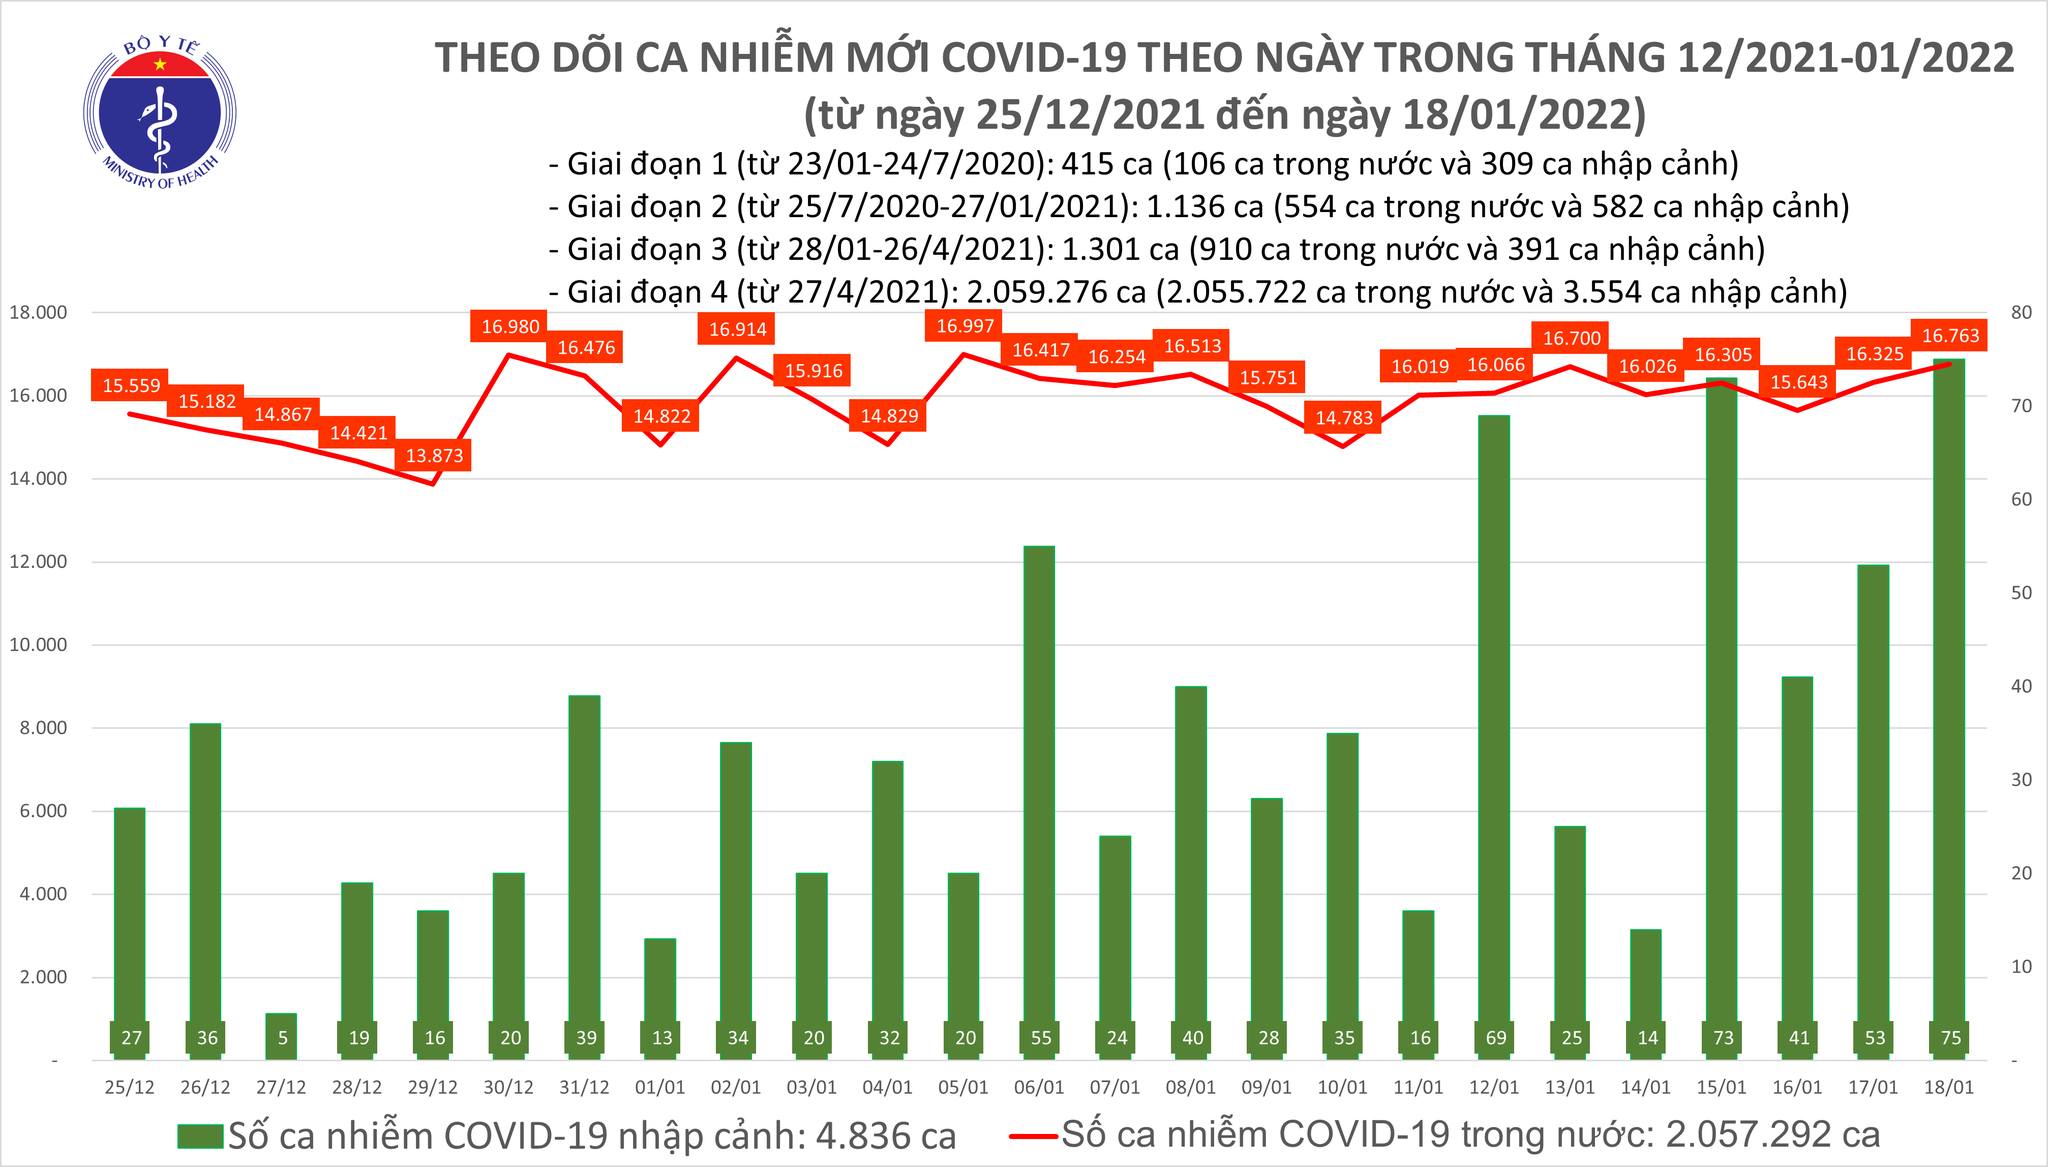 Ngày 18/01, ghi nhận 16.838 ca nhiễm Covid-19, Hà Nội đứng đầu với 2.935 ca